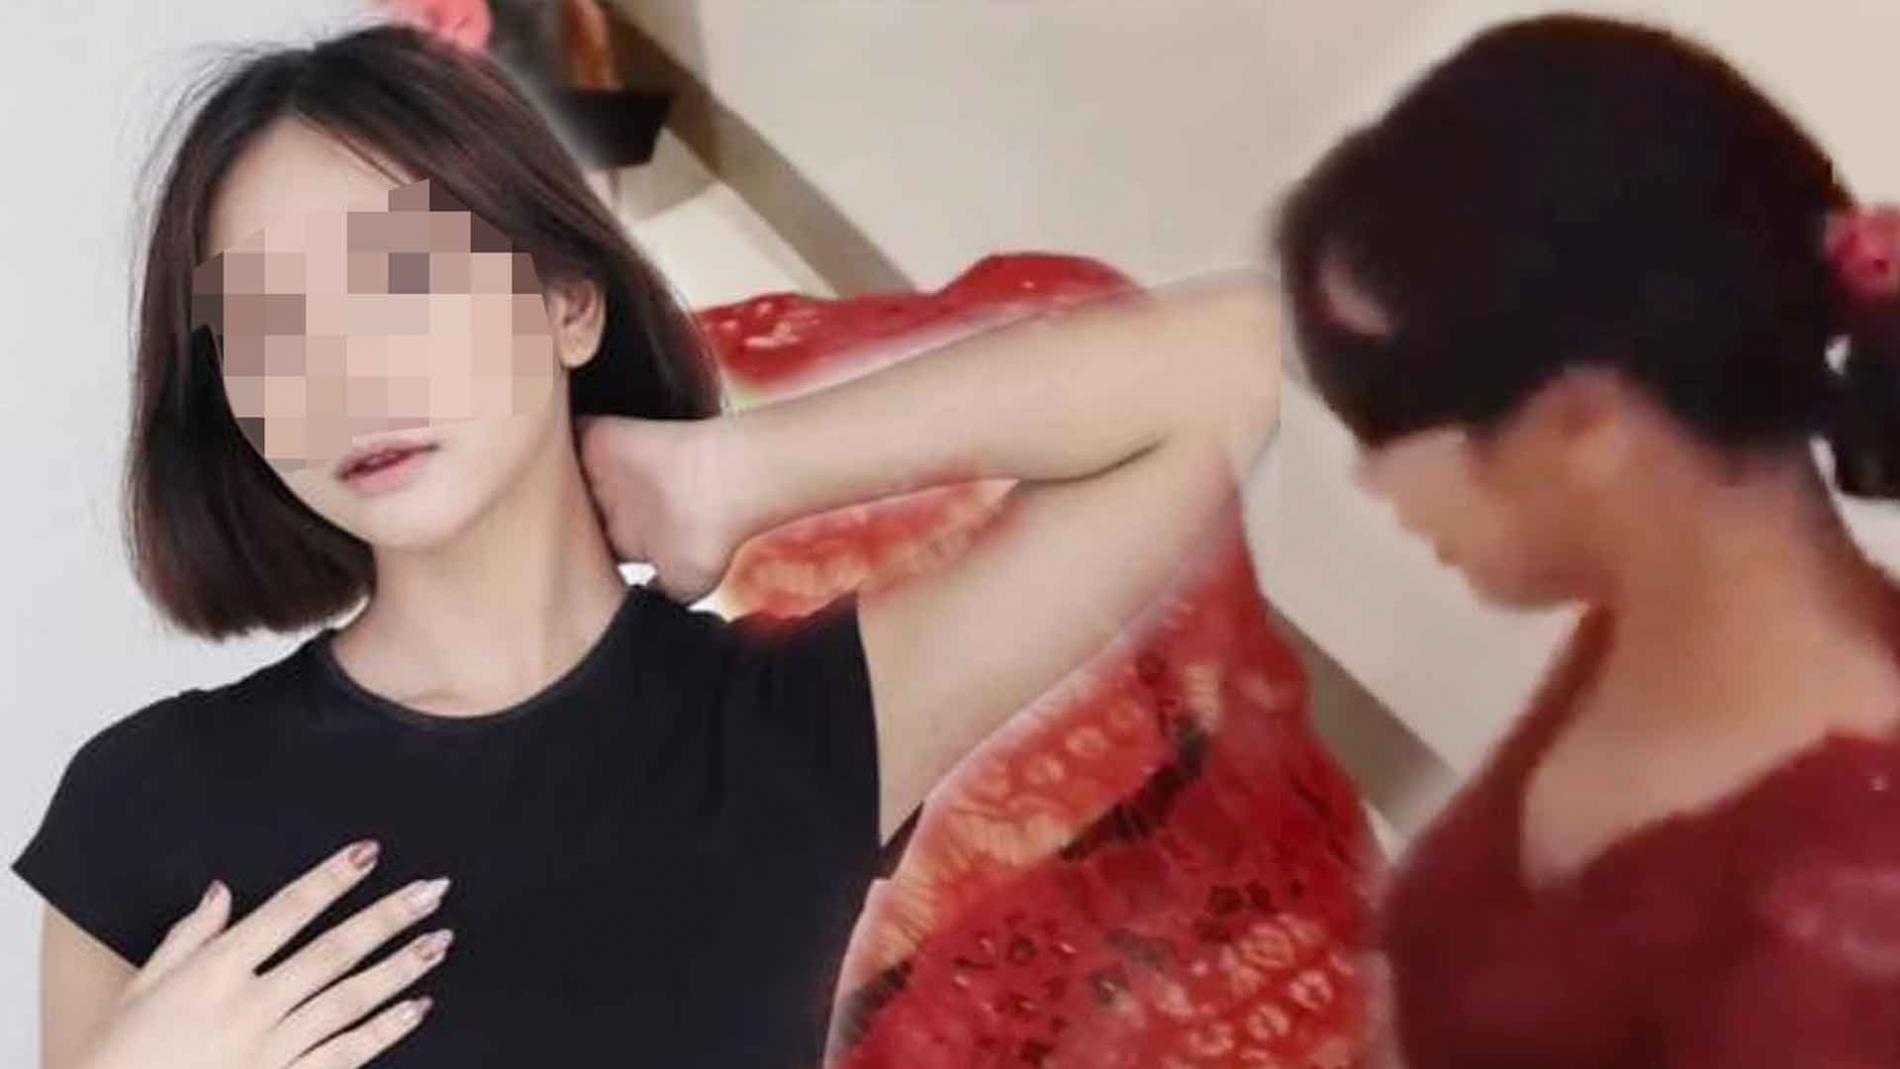 Polisi Klarifikasi Pemeran Video Syur ''Kebaya Merah'' Bukan Pasien Rumah Sakit Jiwa 